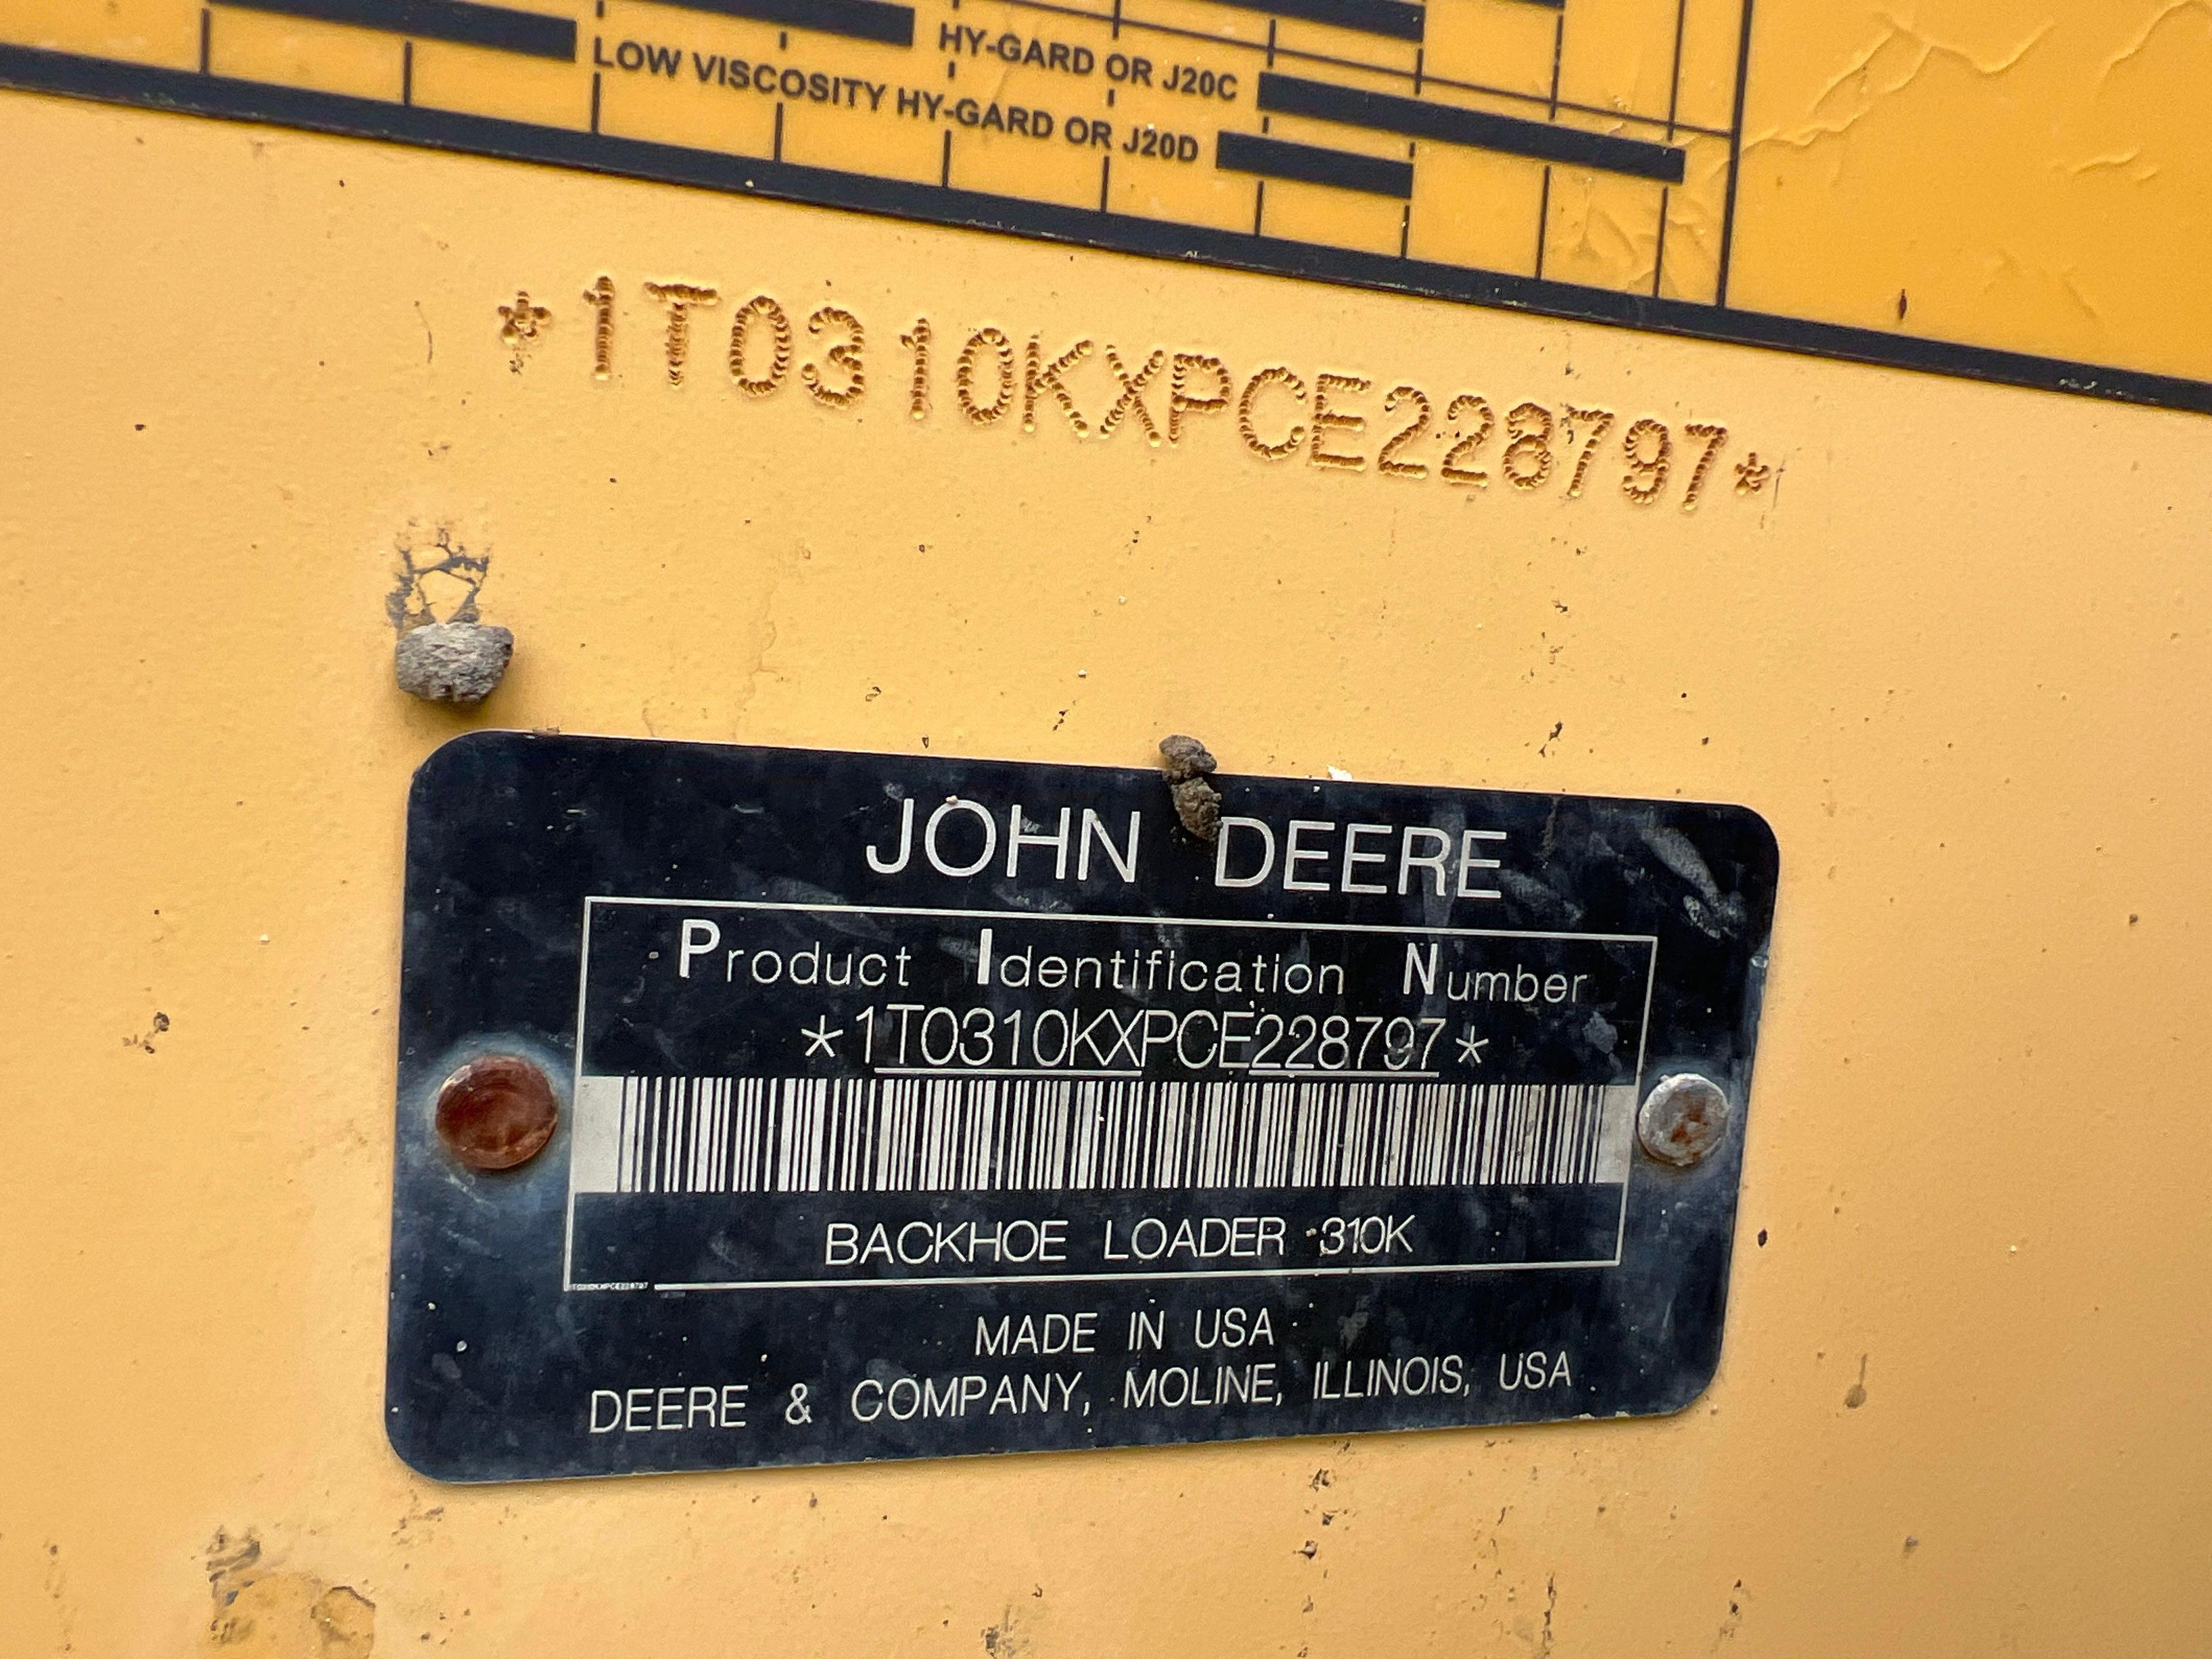 2014 JOHN DEERE 310K TRACTOR LOADER BACKHOE SN:228797 powered by John Deere diesel engine, equipped